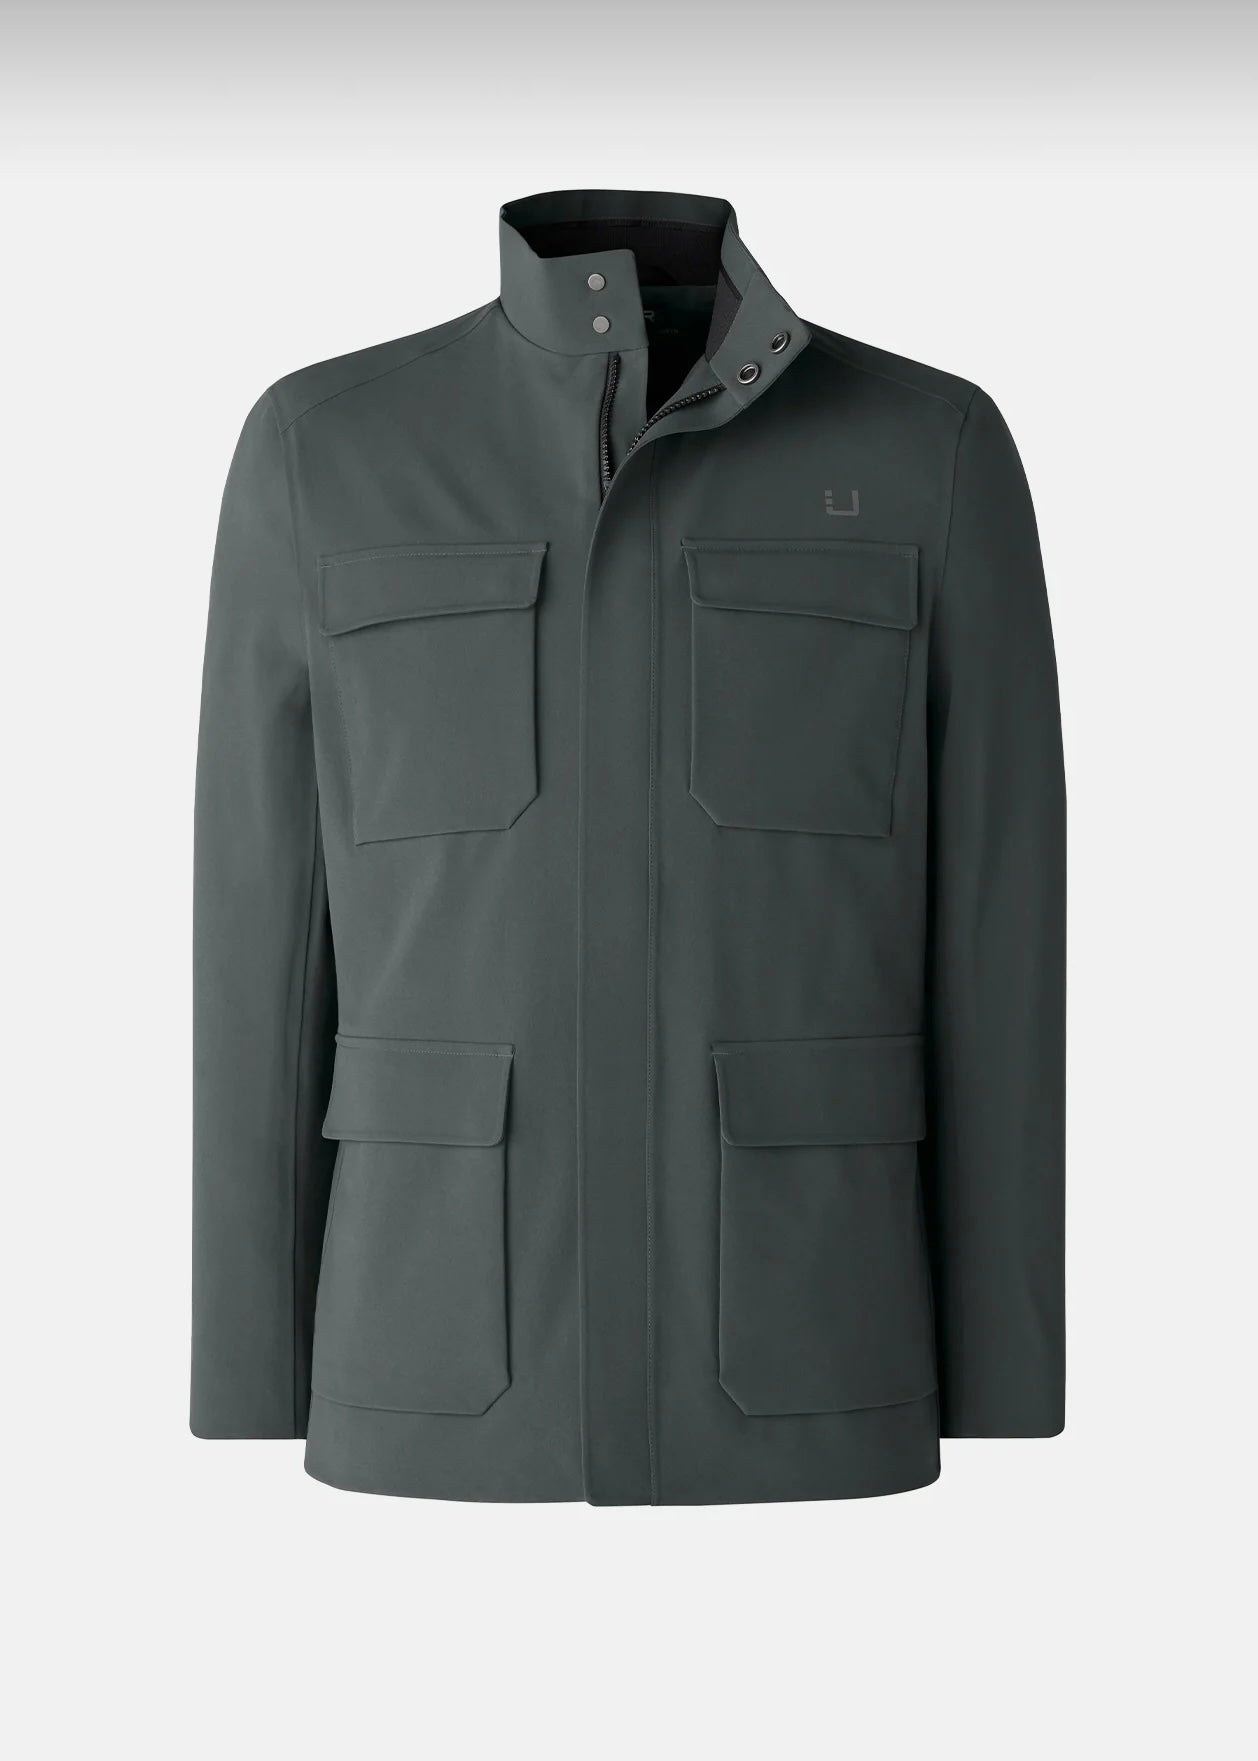 UBR Charger jacket - Olive